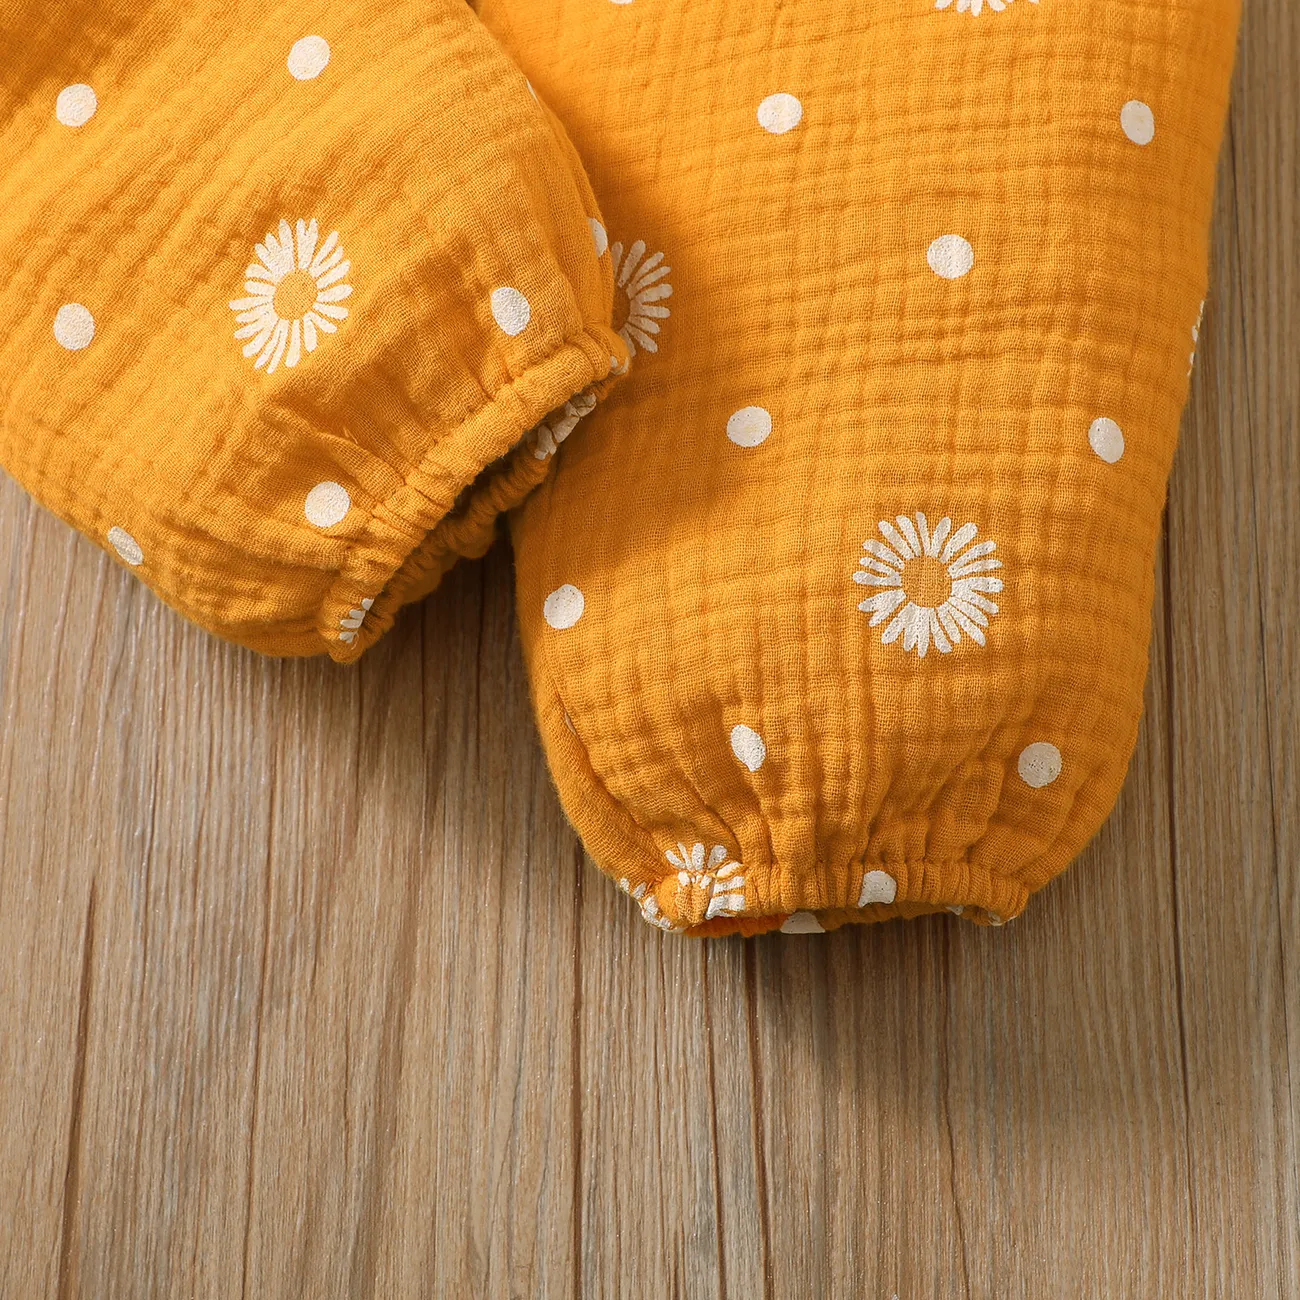 Kleinkinder Mädchen Hypertaktil Süß Kleine Gänseblümchen Baby-Overalls gelb big image 1